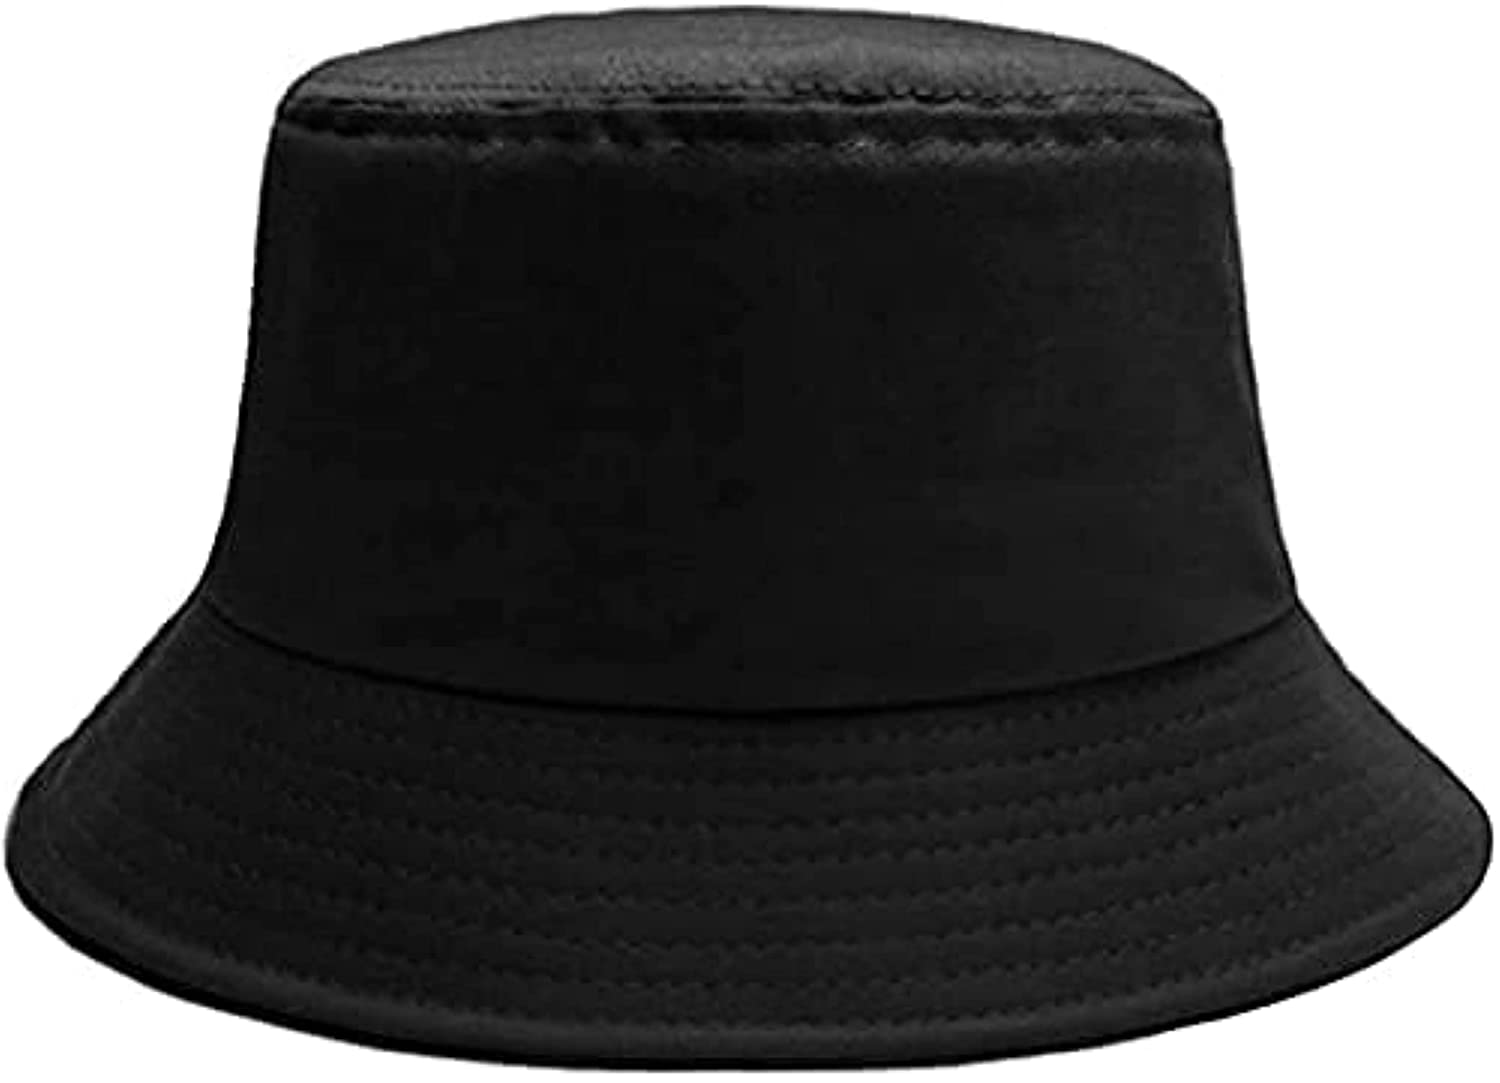 Bucket Hats For Men